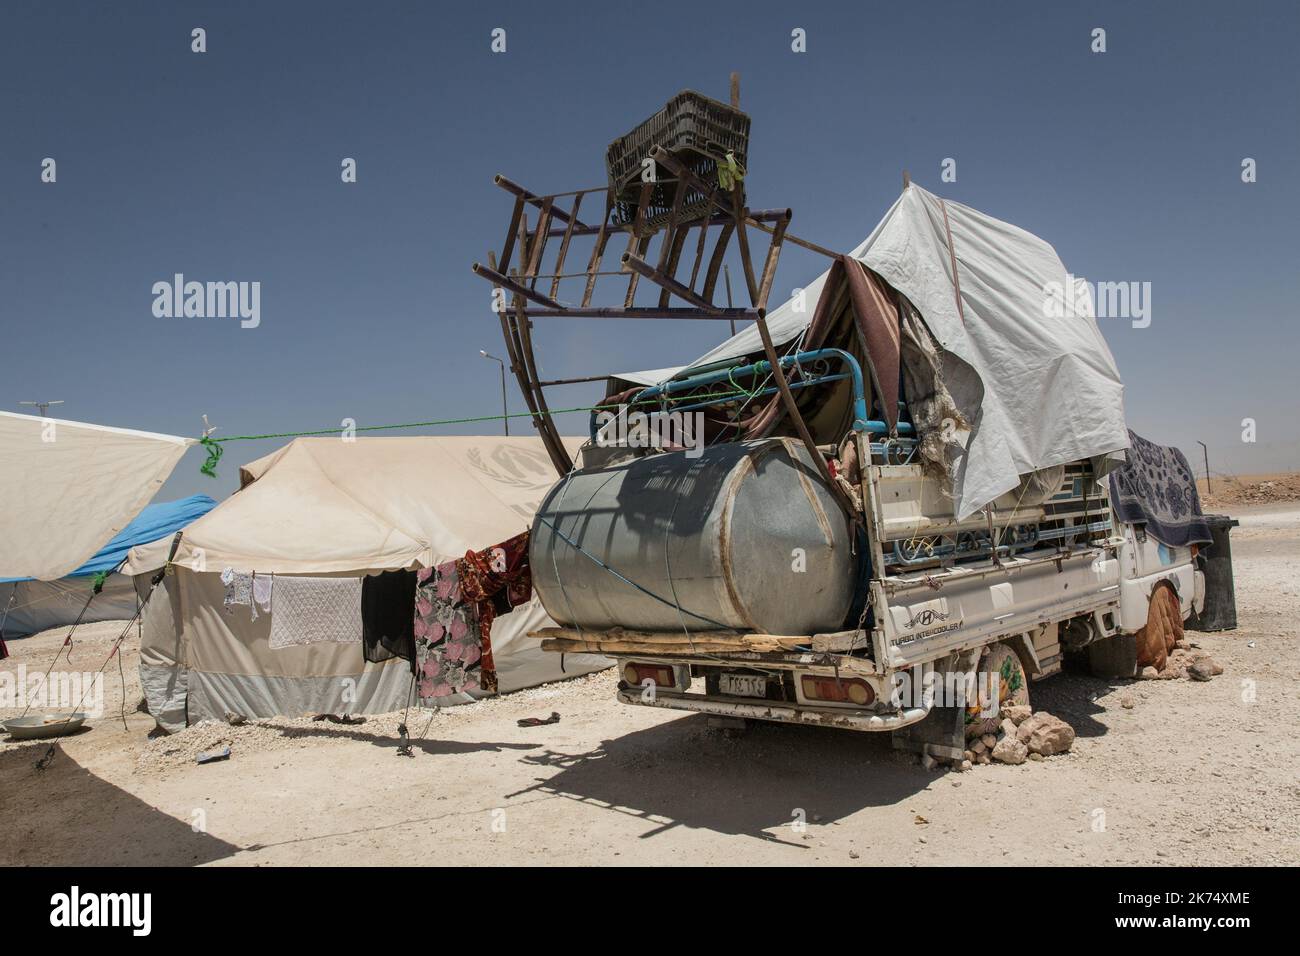 Juillet 2017 - Syrie - Rojava - Syrie du Nord - Camp de deplaces d'Ain Issa / Ambiance de camp / une camionnette bricolee pour distribution de l'eau Foto Stock